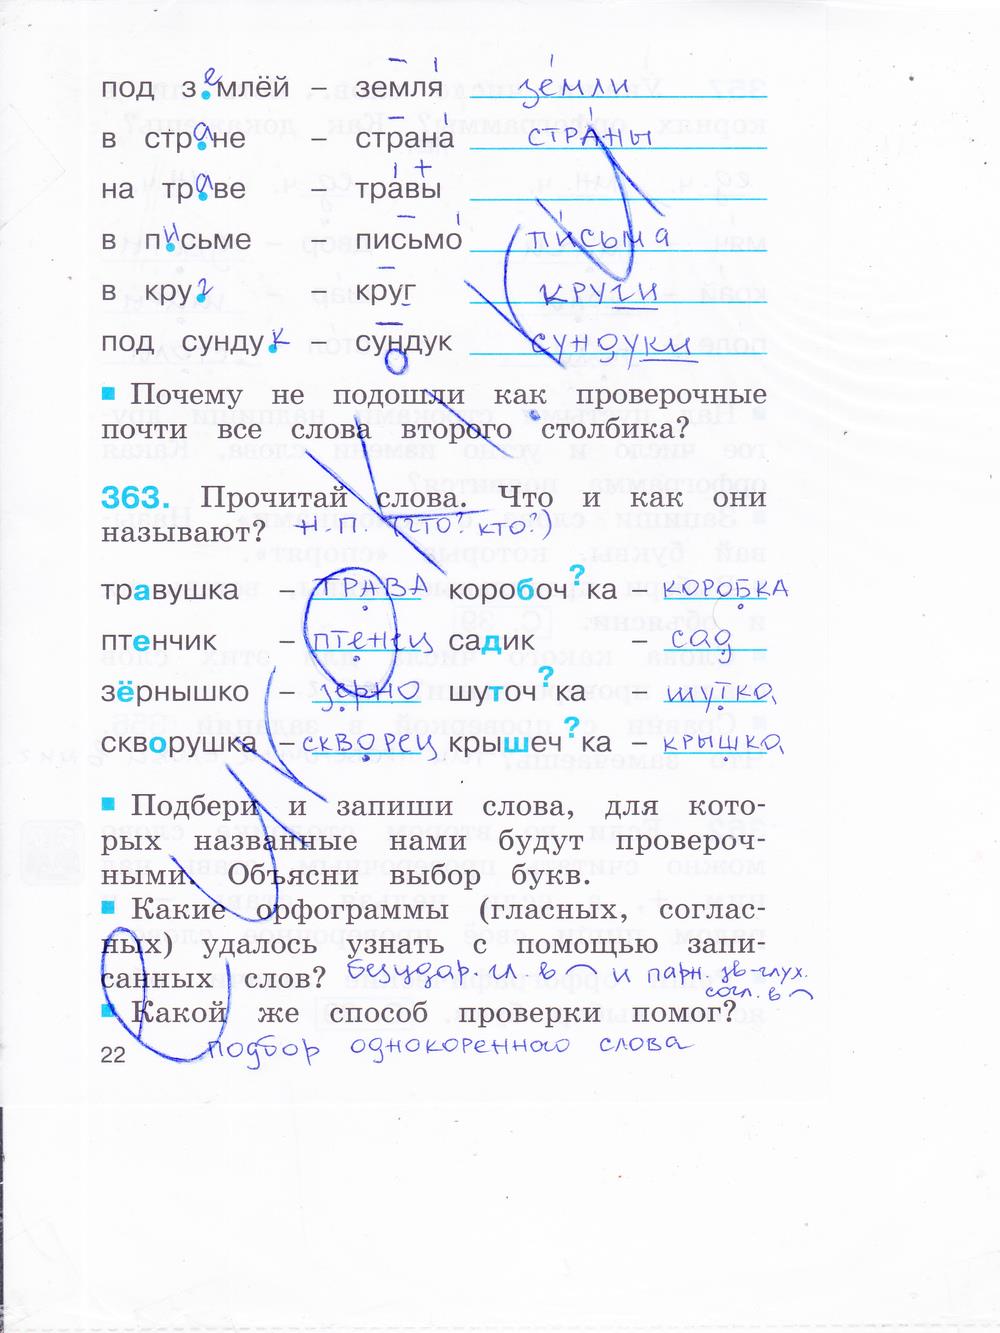 гдз 2 класс рабочая тетрадь часть 2 страница 22 русский язык Соловейчик, Кузьменко